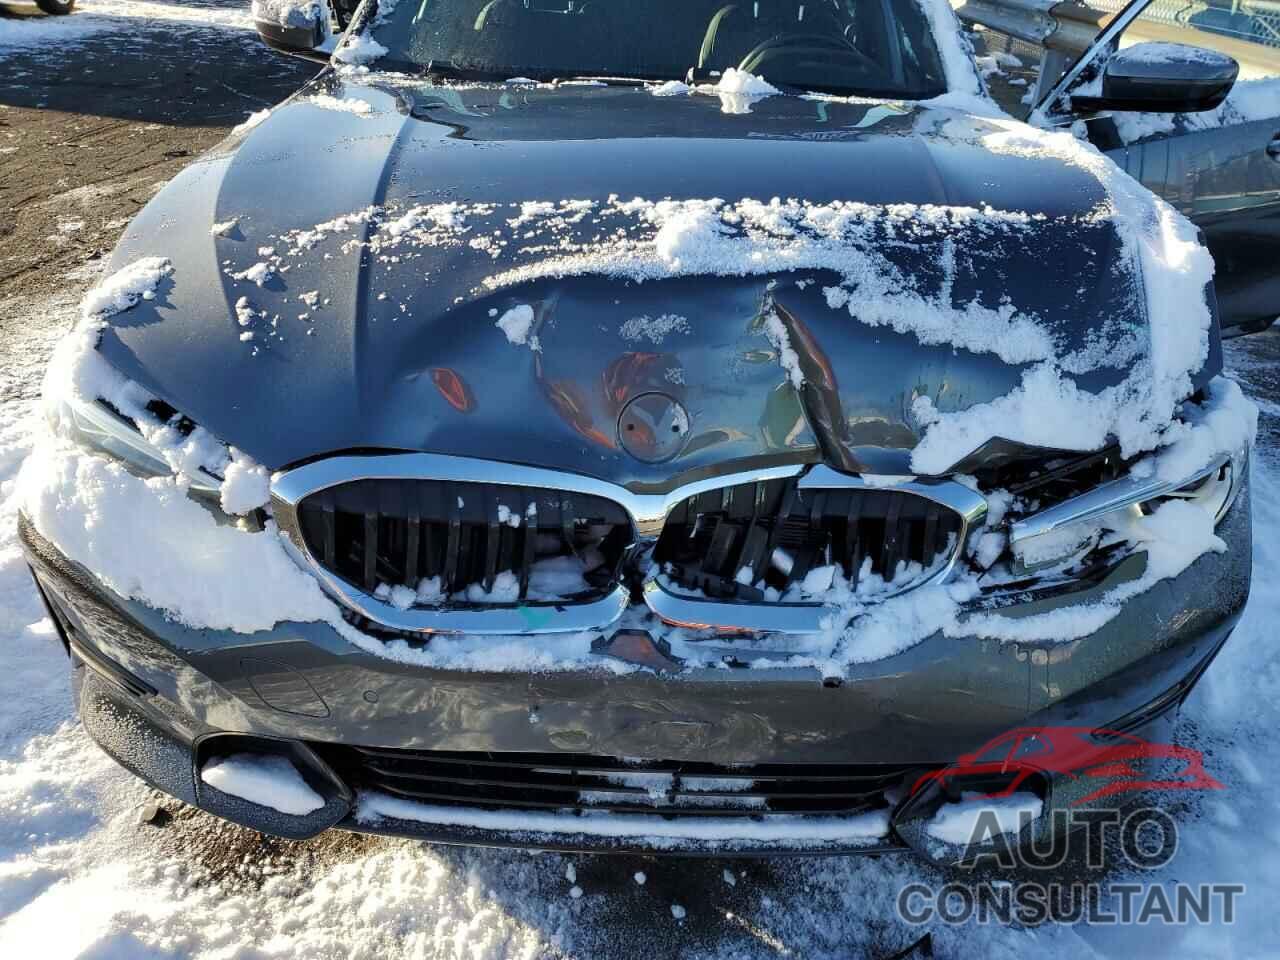 BMW 3 SERIES 2021 - 3MW5R7J05M8C17460